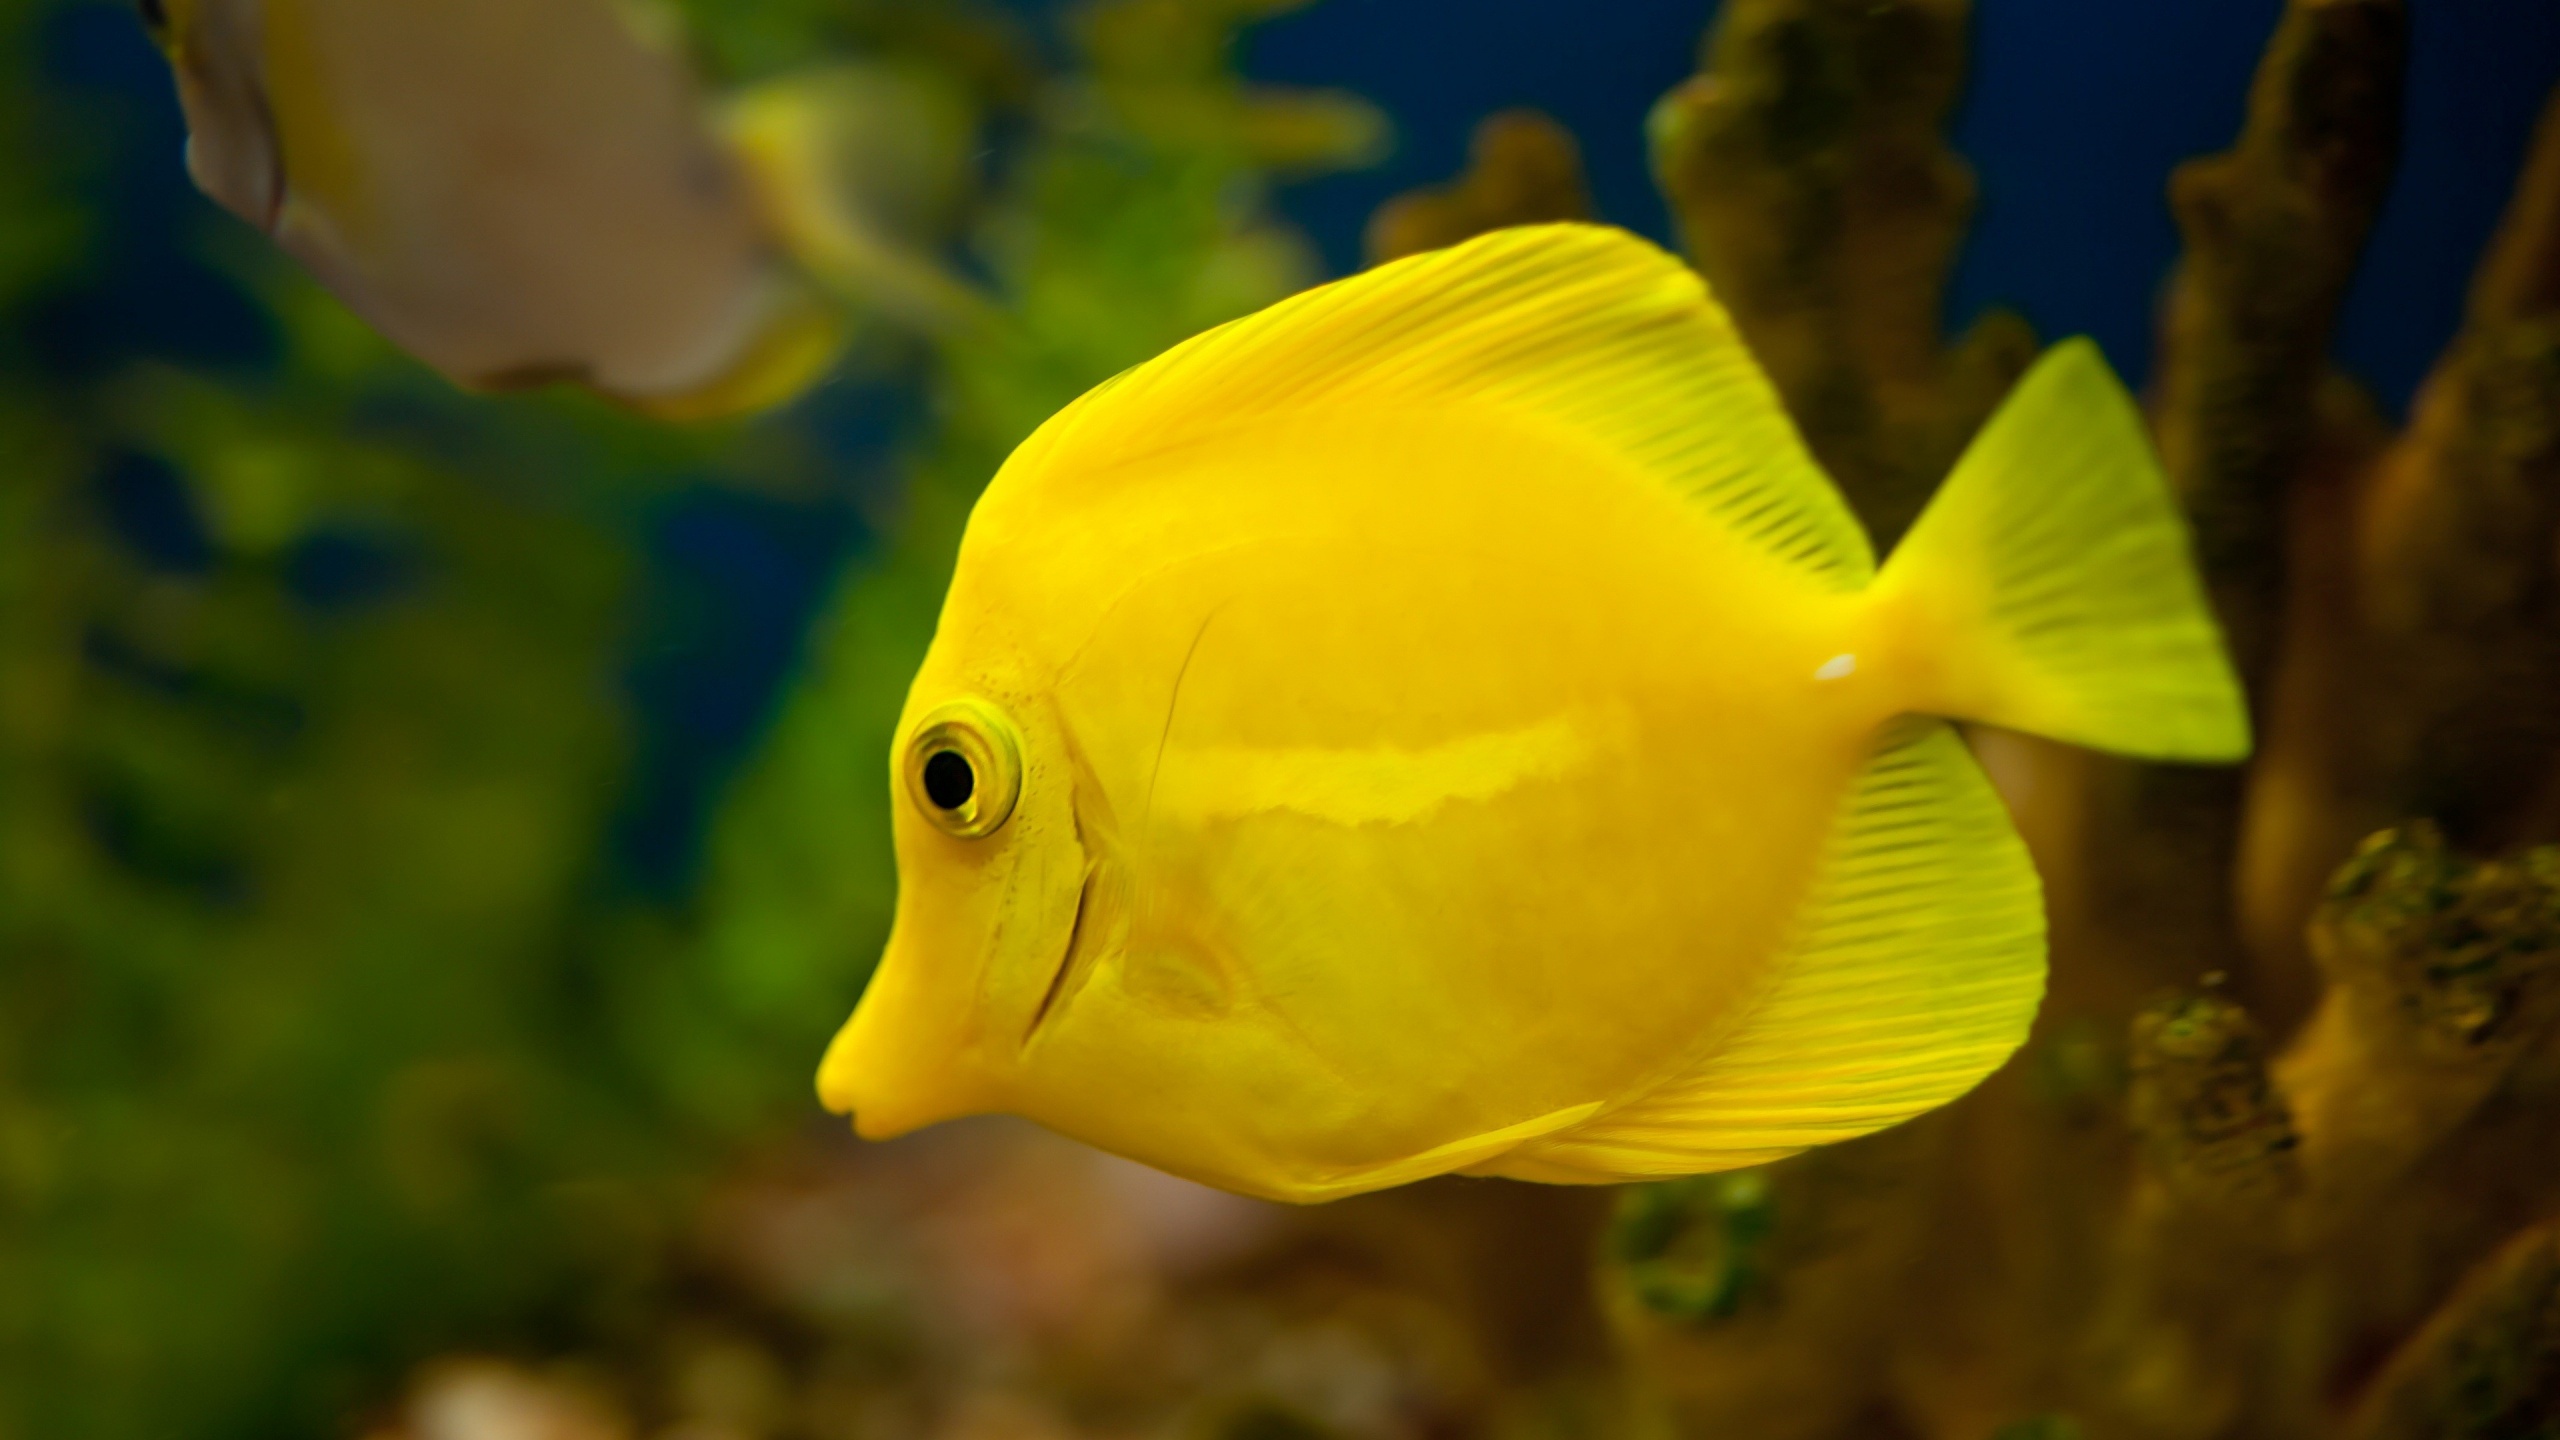 Cute Yellow Fish Image Size Beautiful